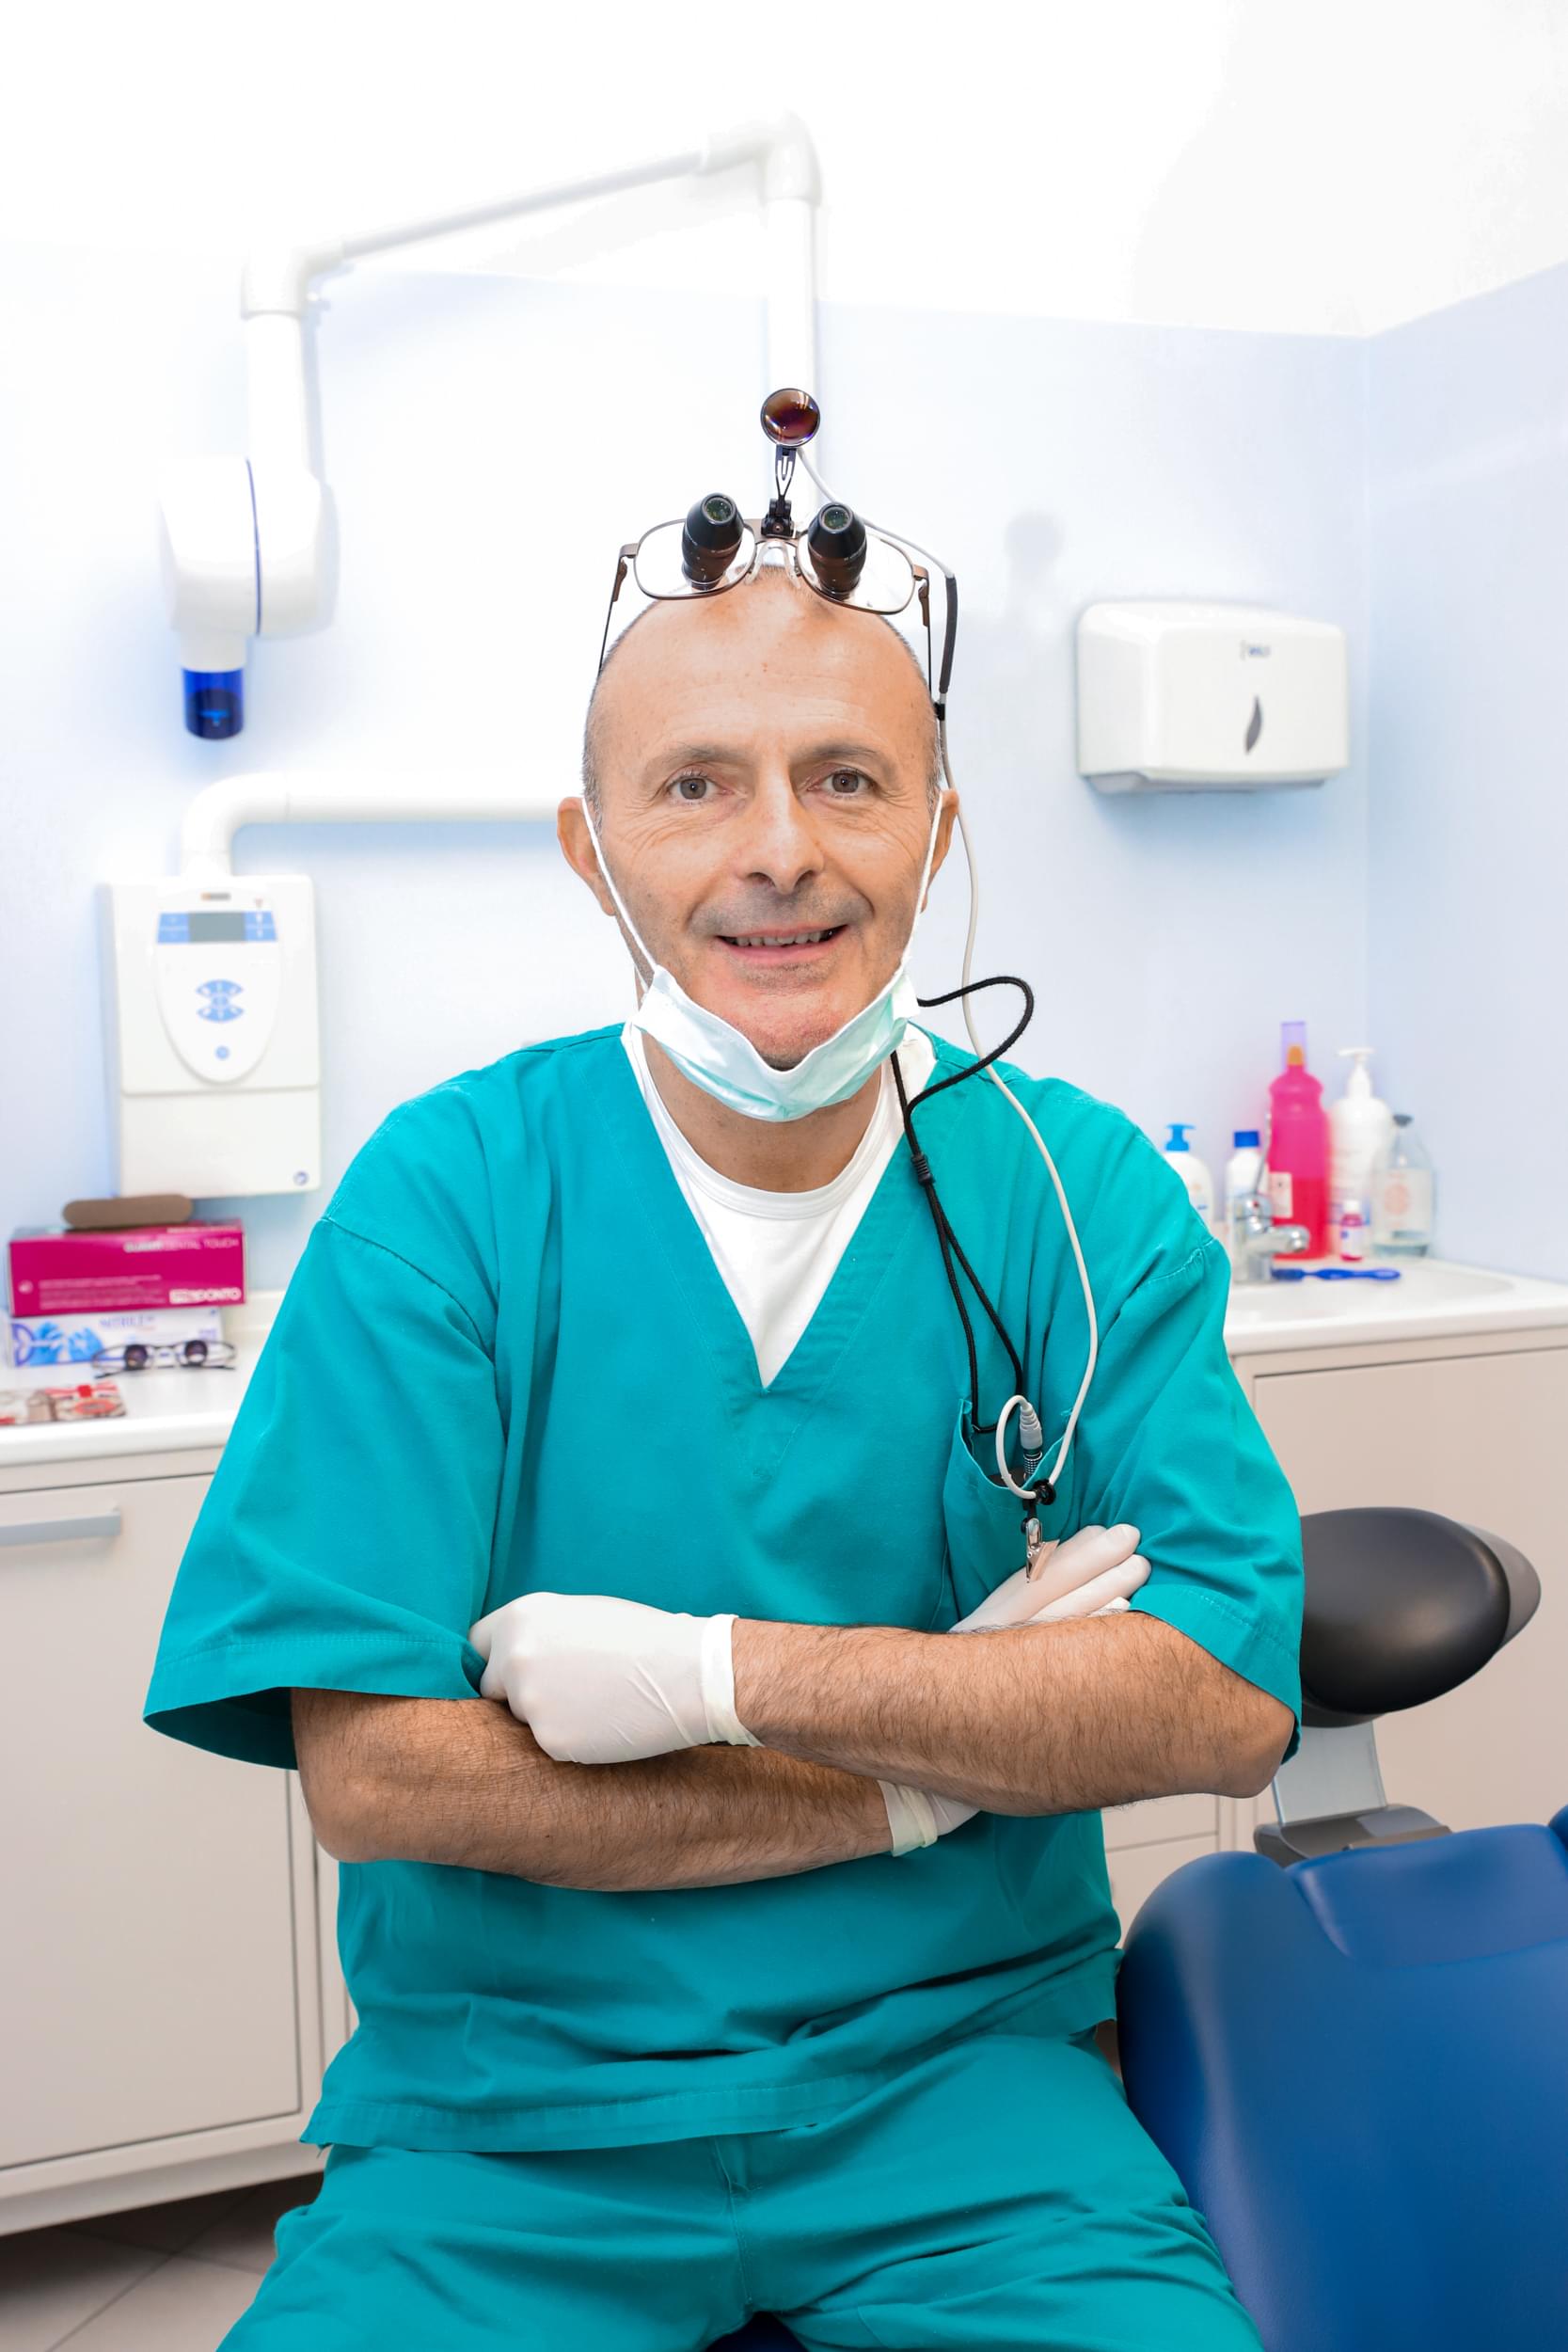 Diazzi nel suo studio dentistico a Cremona